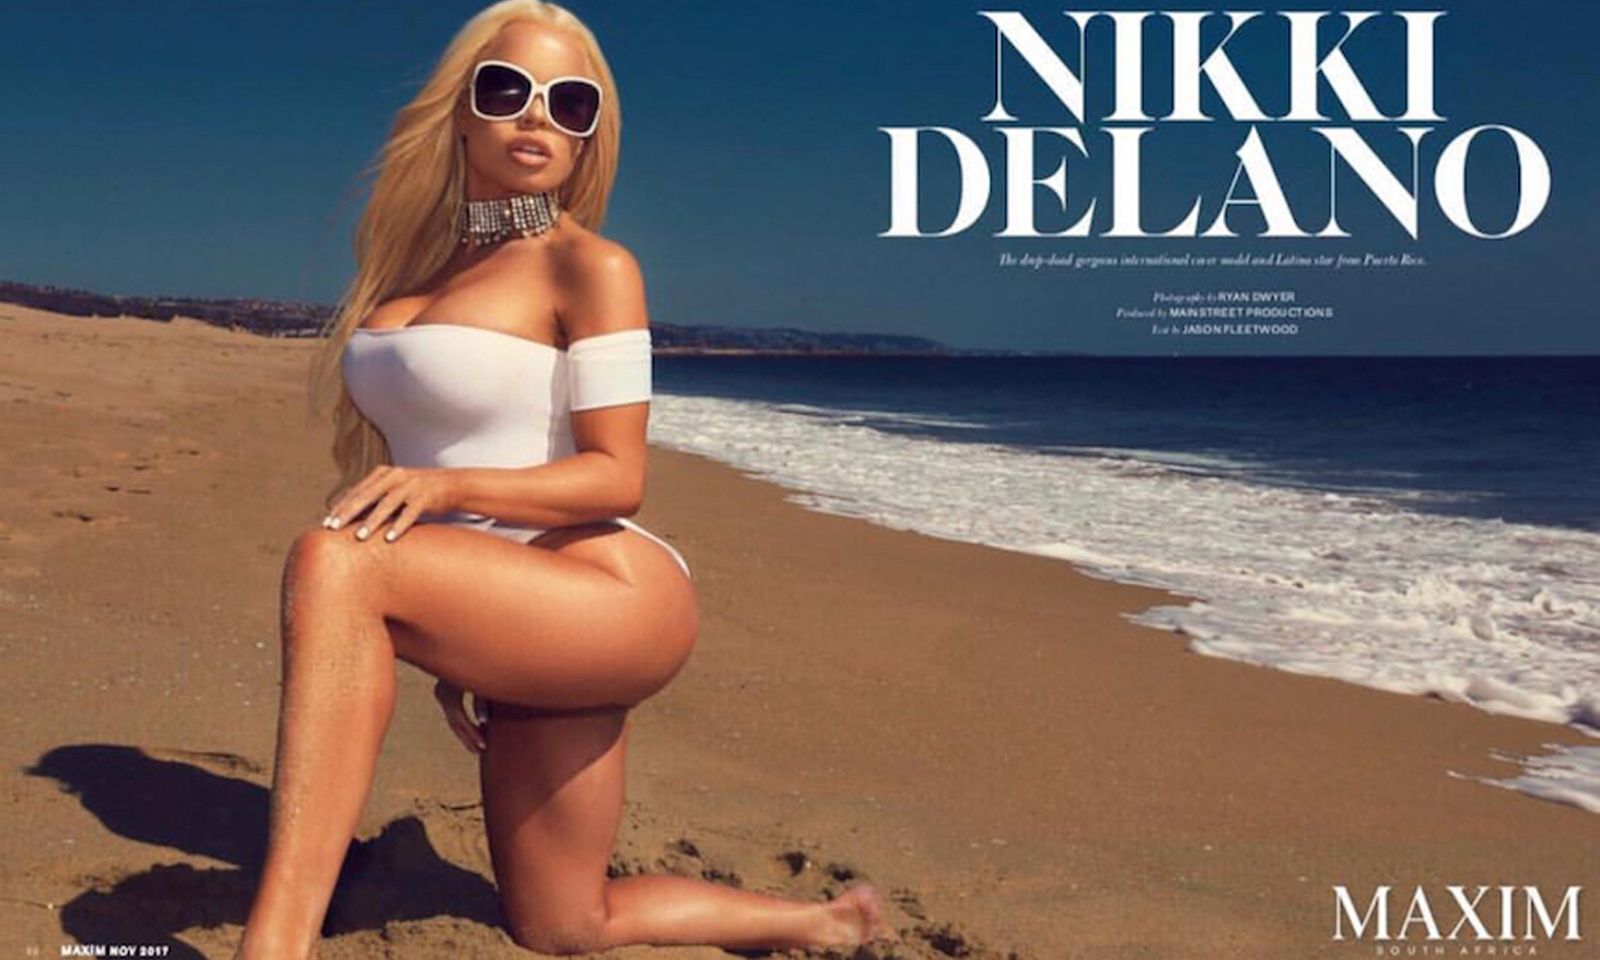  Nikki Delano Scores Six-Page Spread in Maxim Magazine